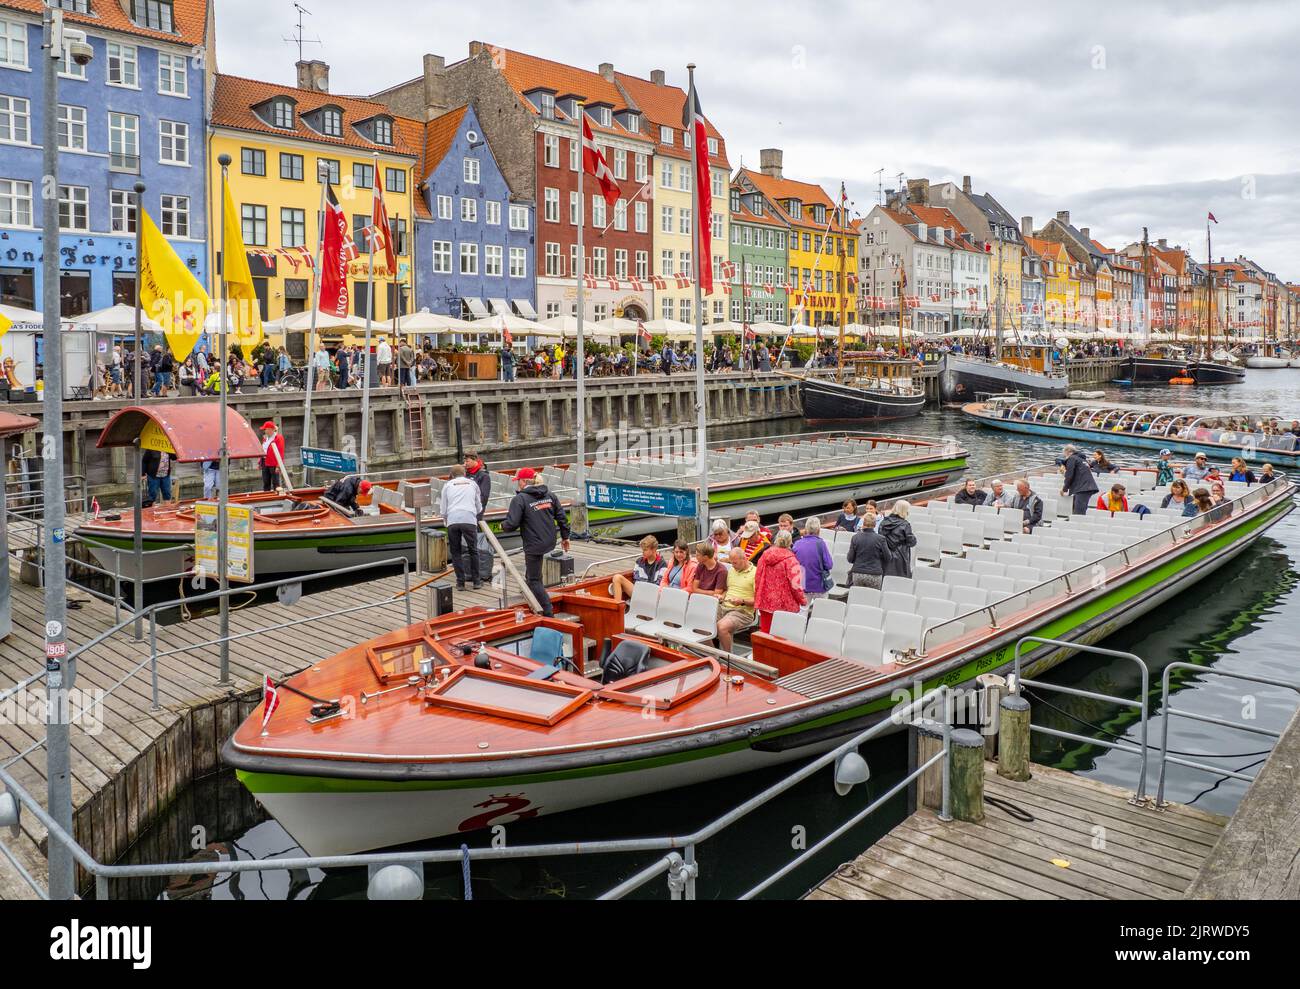 El destino turístico popular de Nyhavn una ensenada del mar bordeada de 17th C casas de colores cafés y bares y barcos de vela - Copenhague Dinamarca Foto de stock